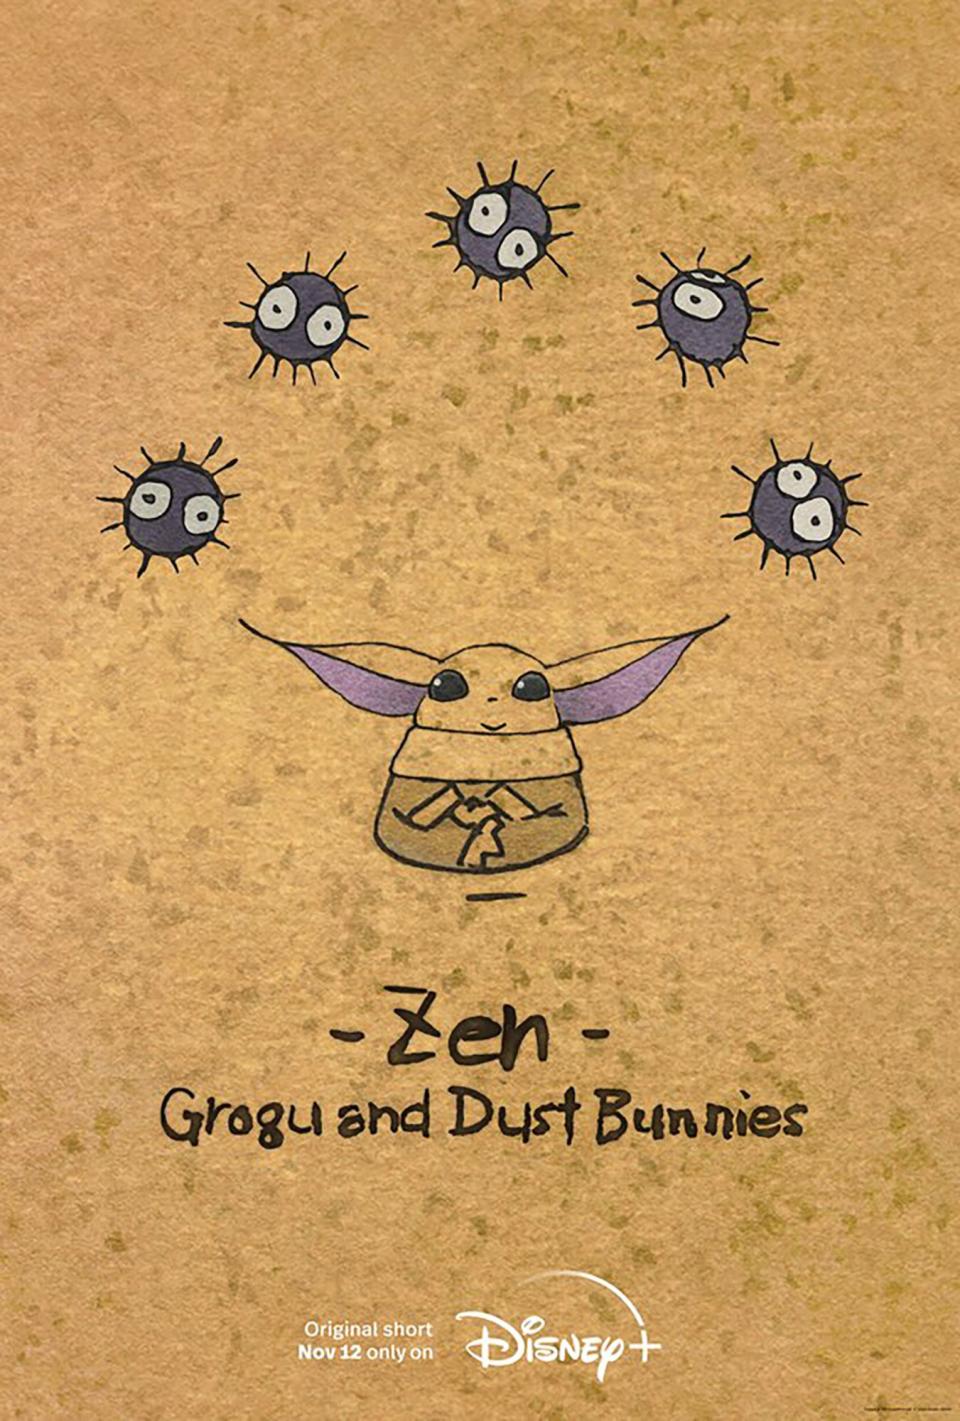 Zen - Grogu and Dust Bunnies, a hand-drawn animated Original short by Studio Ghibli. Disney+